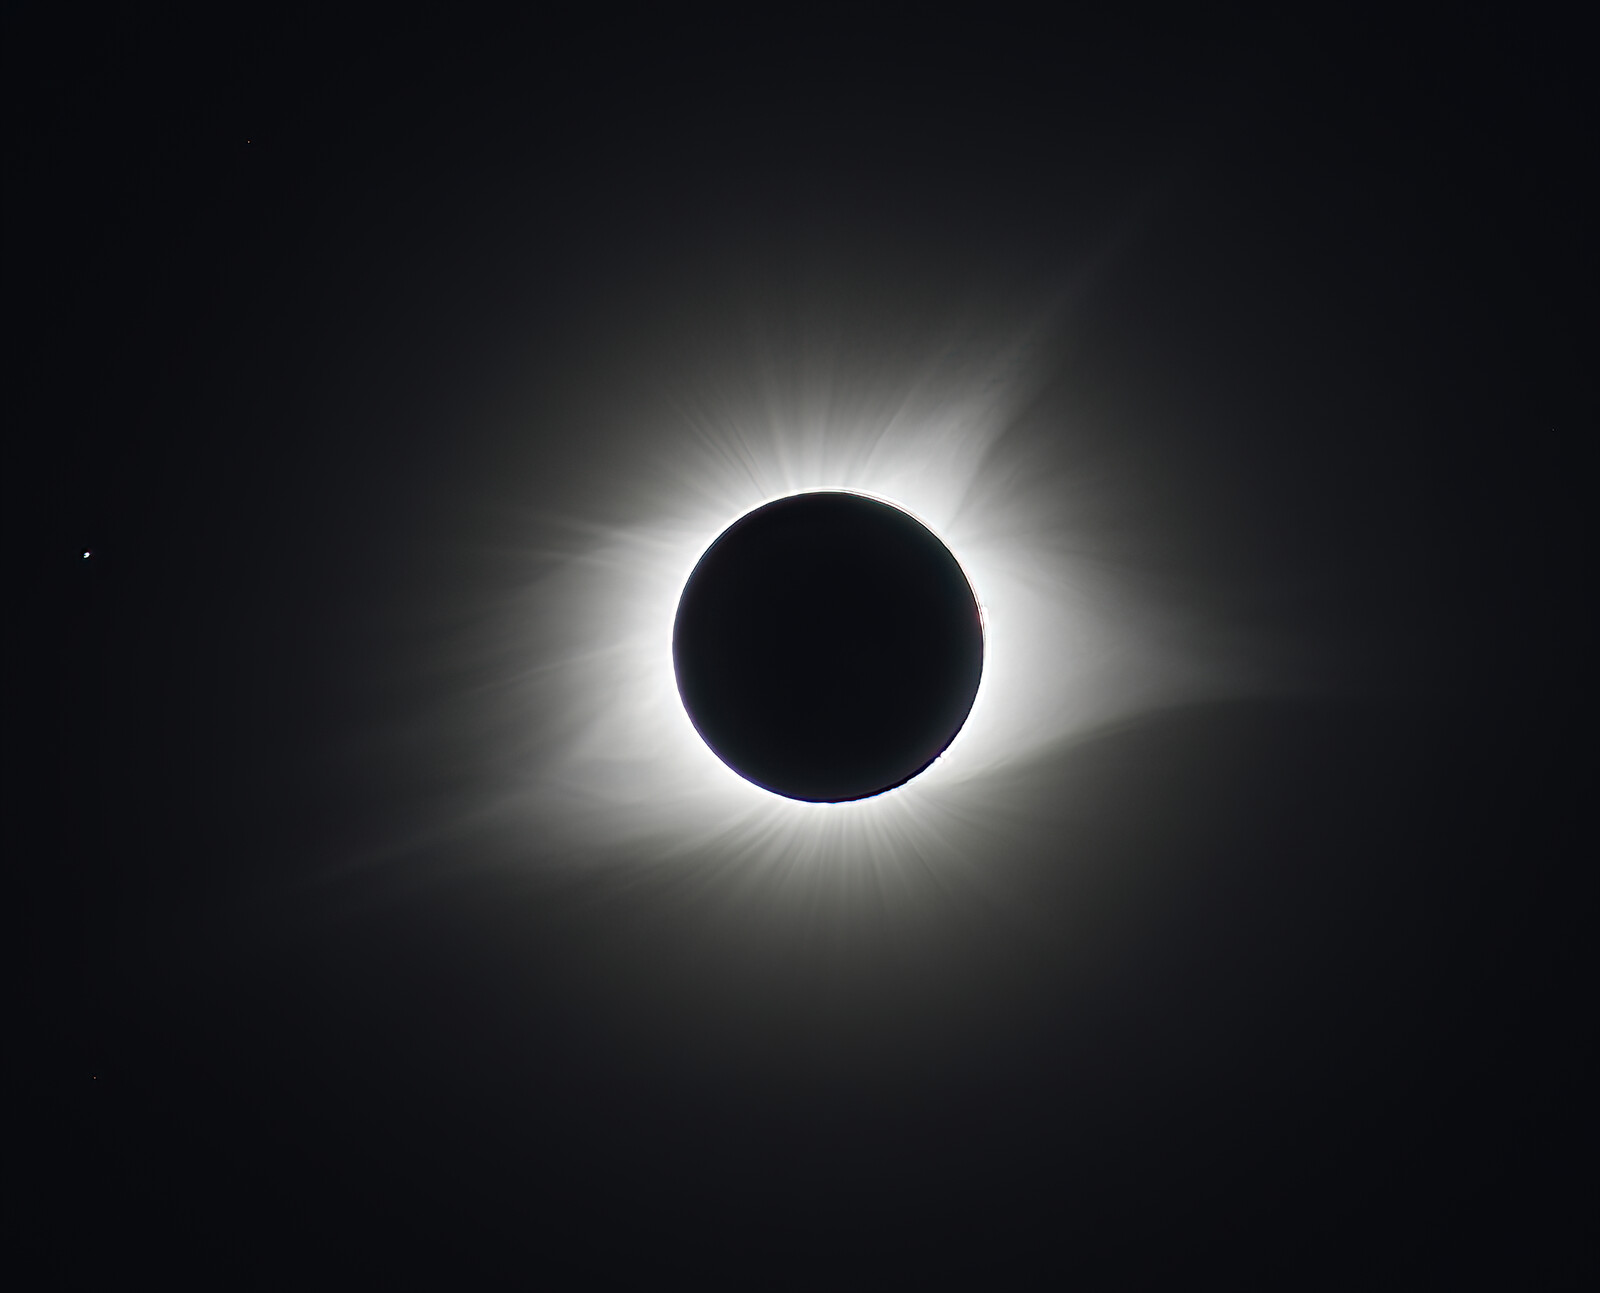 X4 Total Solar Eclipse - 21 Aug 2017 - Corona Details